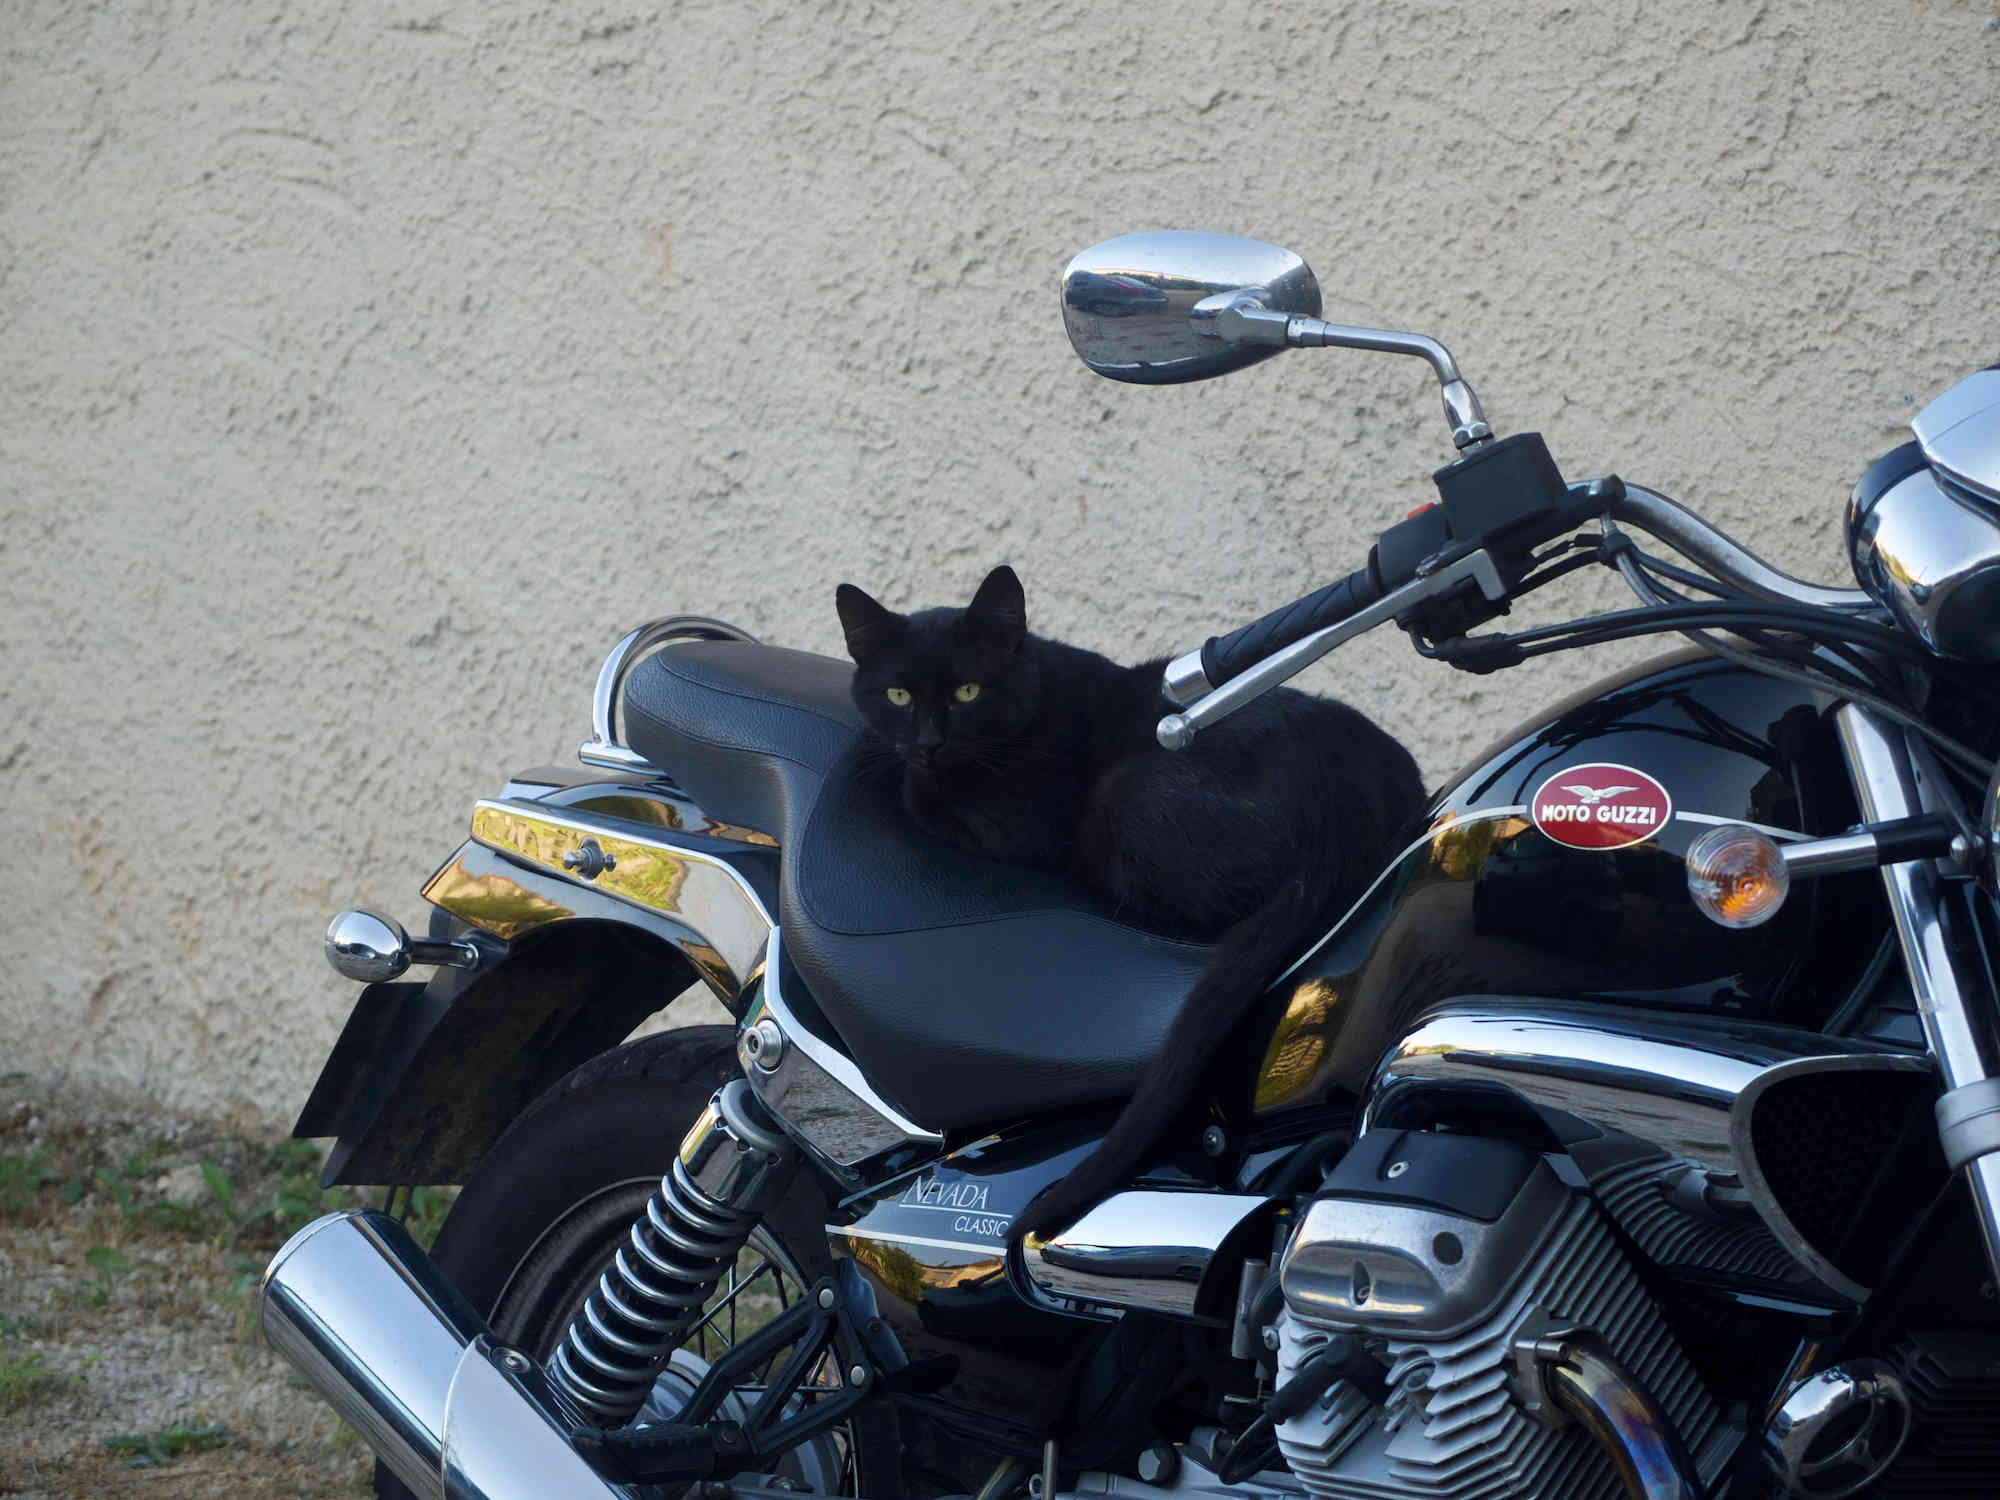 Le Chat Copy Cat squatte la moto !